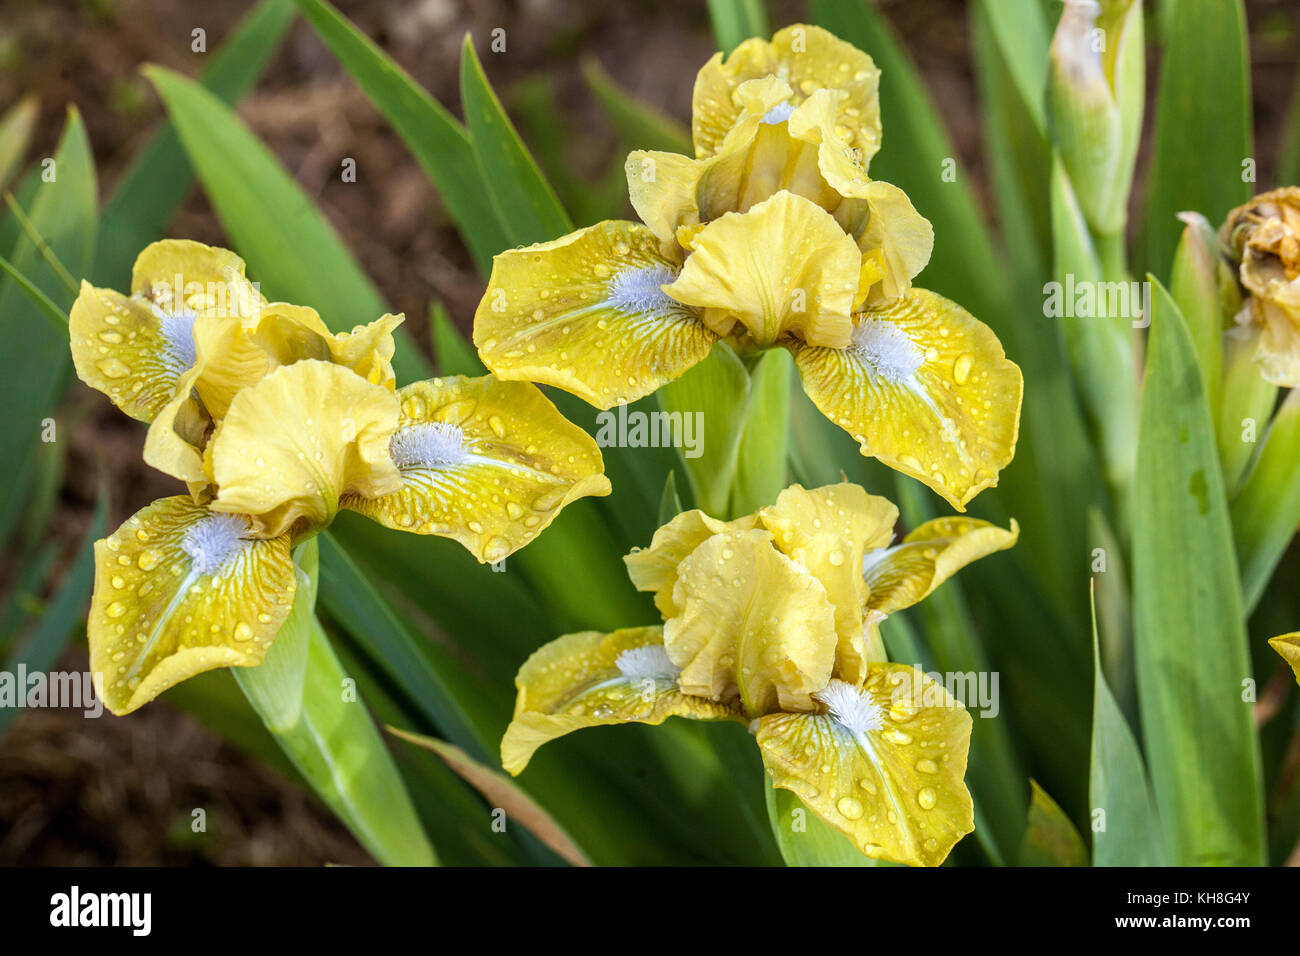 Standard nana Bearded Iris giallo Irisis fiori Barbata nana 'accento Olive', giallo miniatura iris fiore Foto Stock